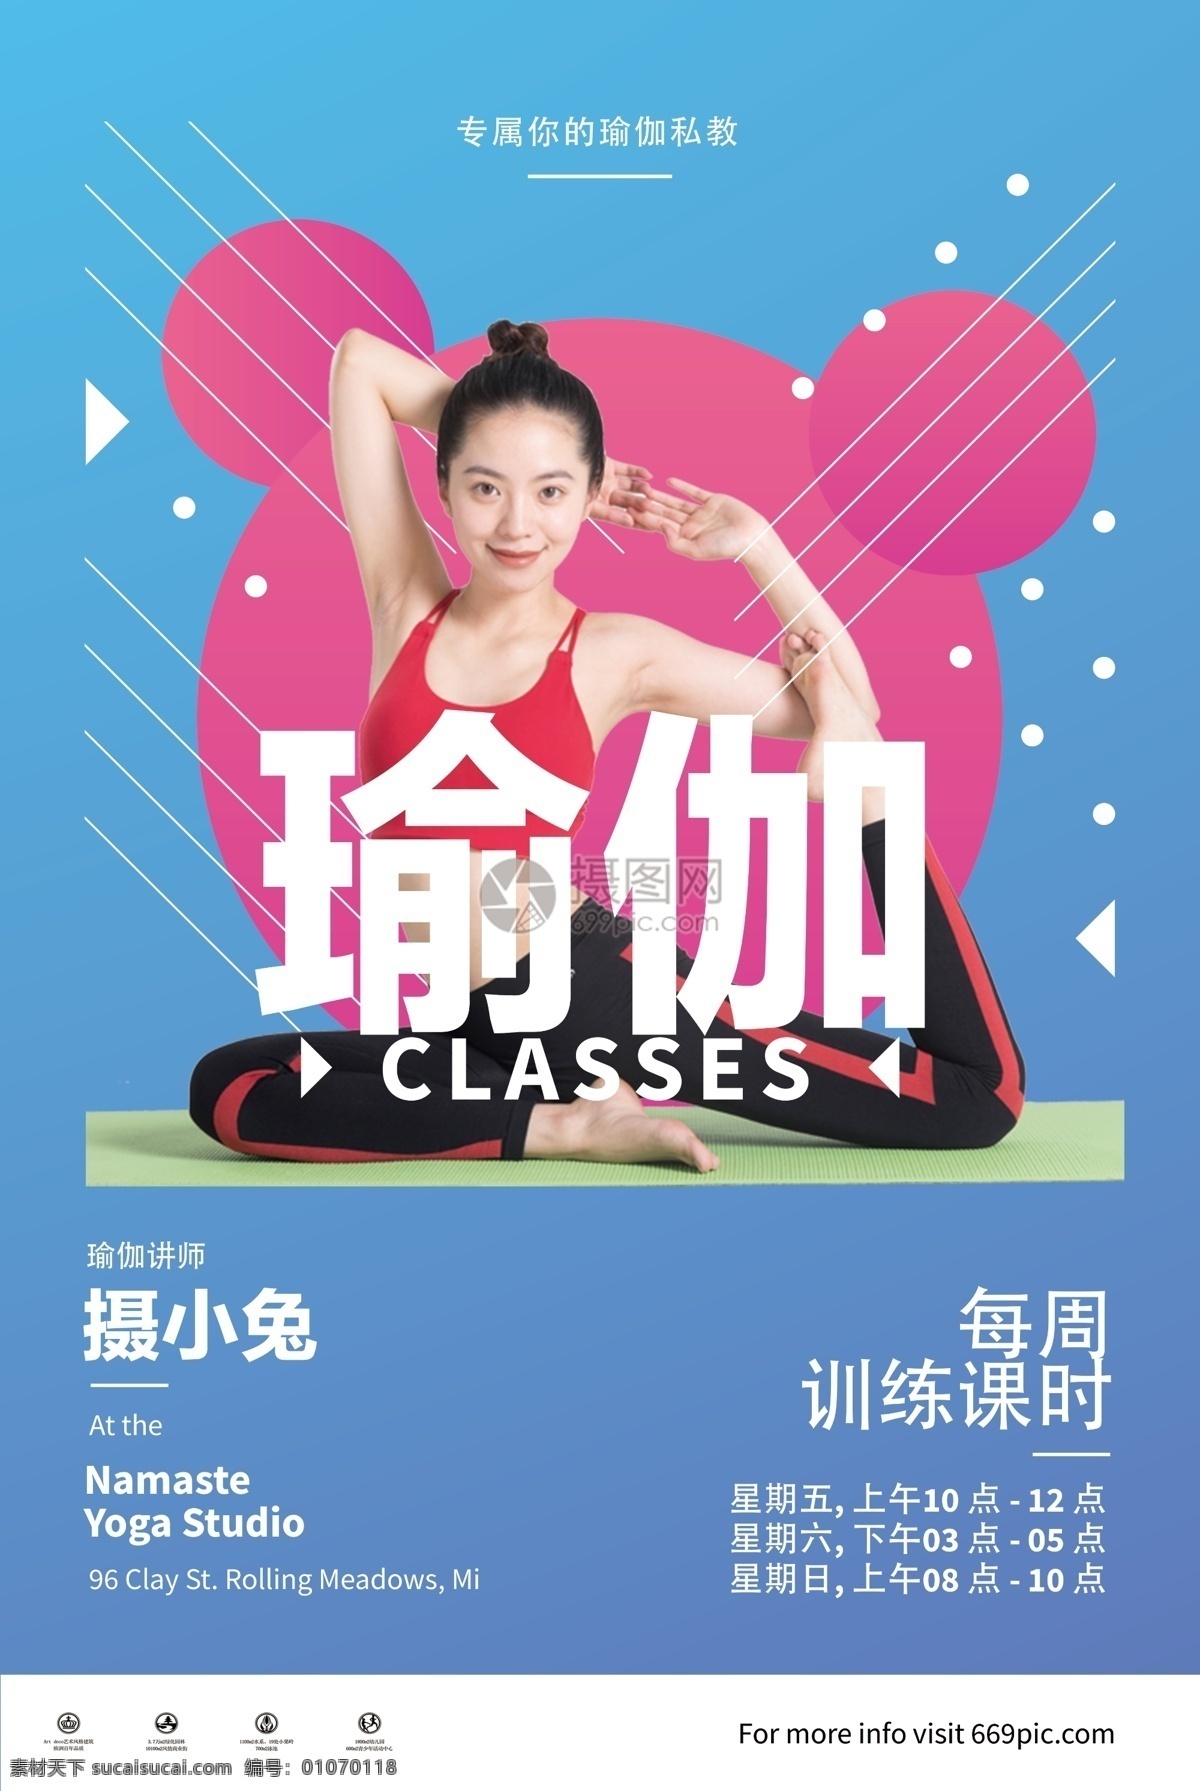 瑜伽 培训 招生 海报 运动健身 瑜伽培训 美体 身材 招生海报 瑜伽海报